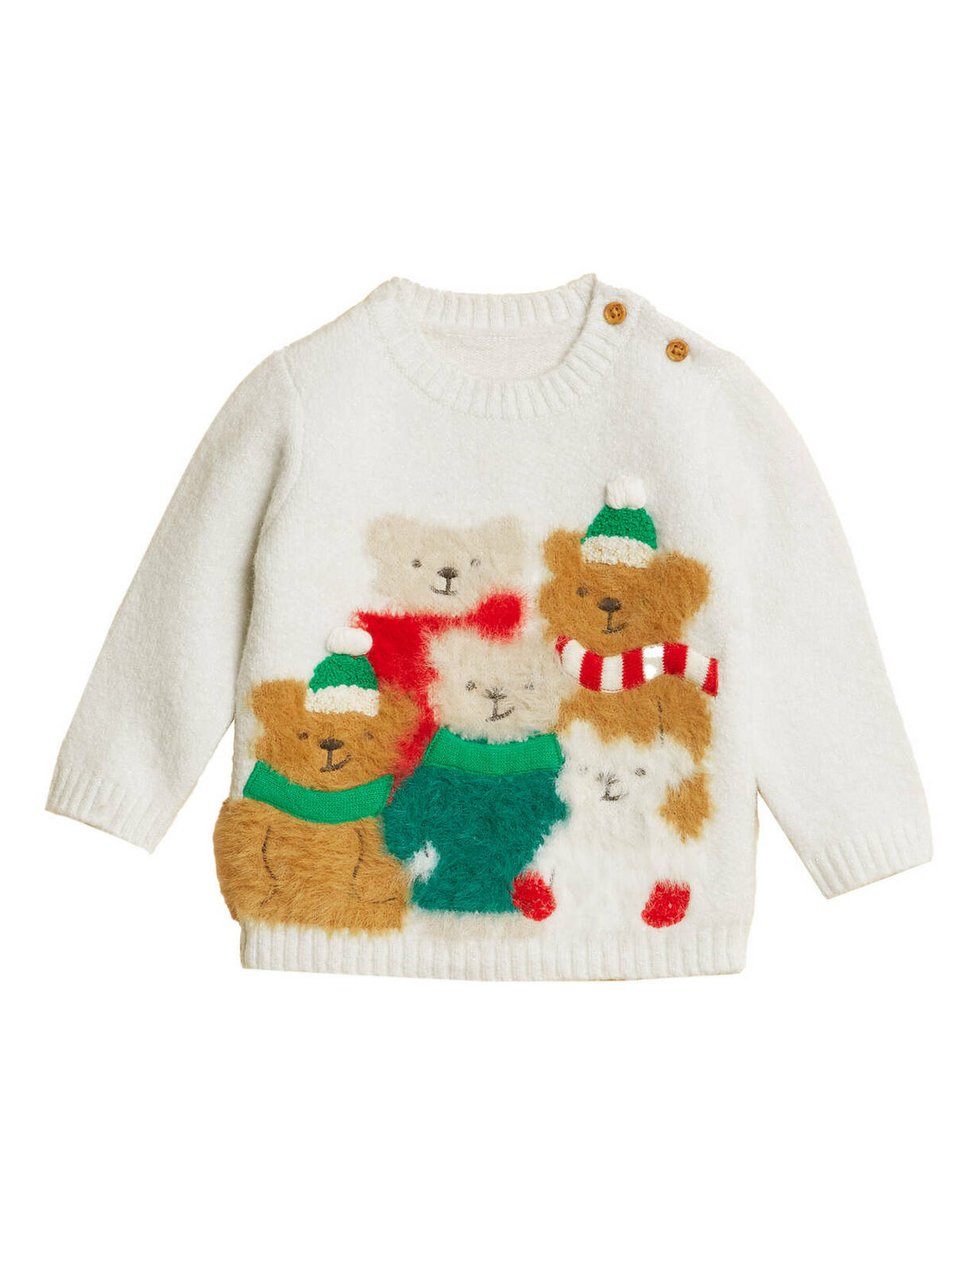 Vánoční svetr s medvídky pro děti, 429 kč, Marks & Spencer